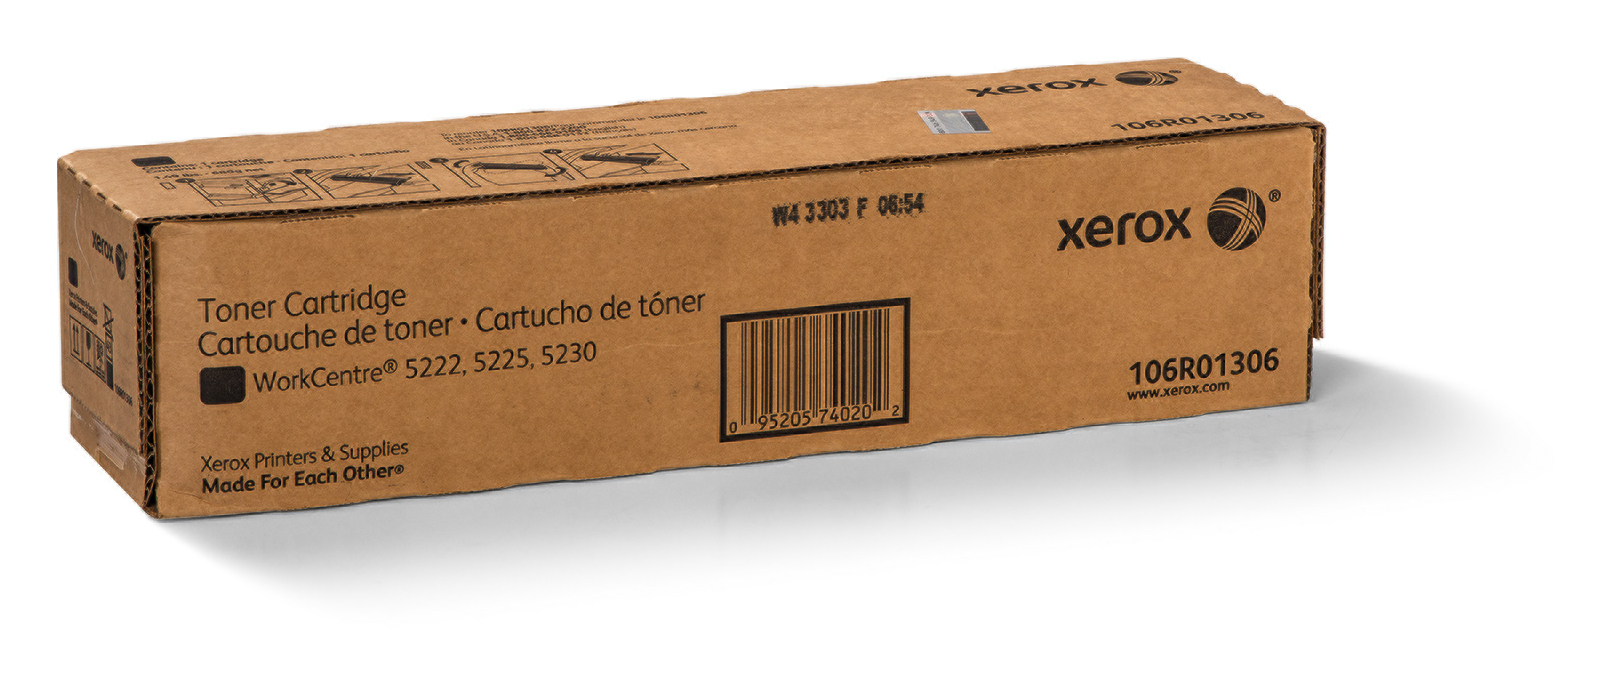 Cartouche de toner noir (vendue) 106R01306 Genuine Xerox Supplies